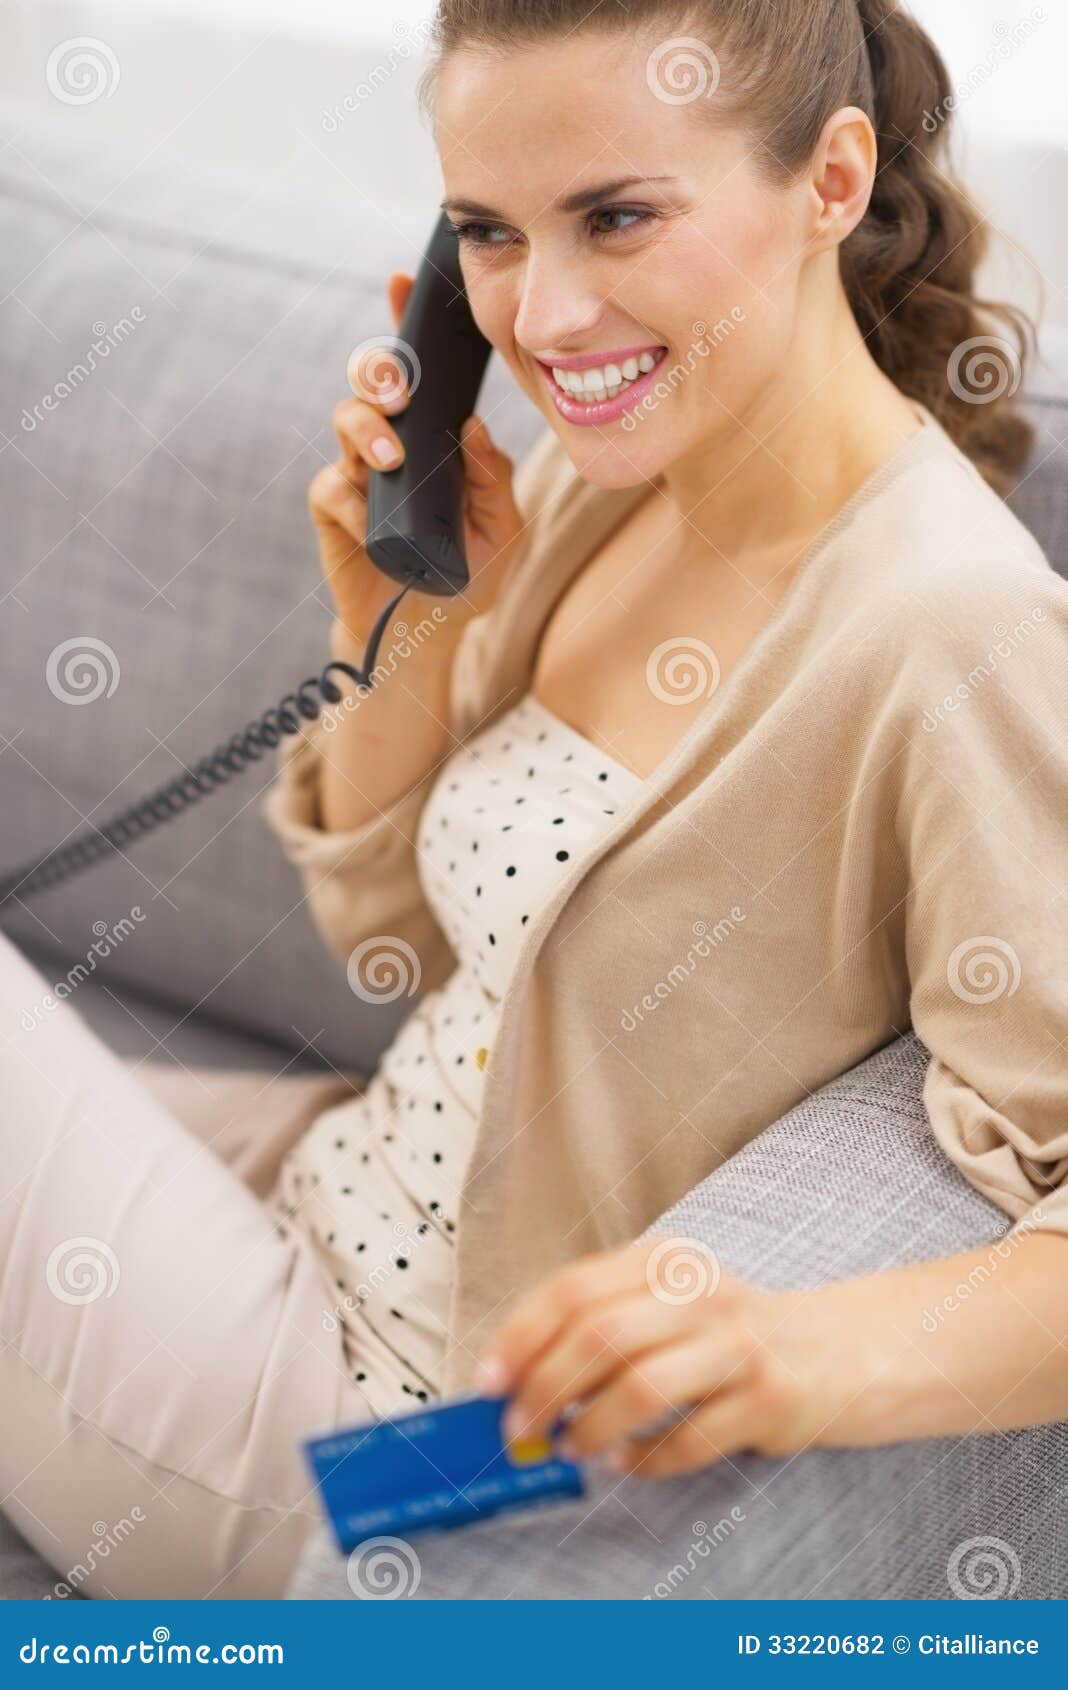 Пока она разговаривала по телефону видео. Девушка сидит в телефоне. Картинки на телефон девушки. Молодые сидят в телефоне. Женщина сидит в телефоне нервная.